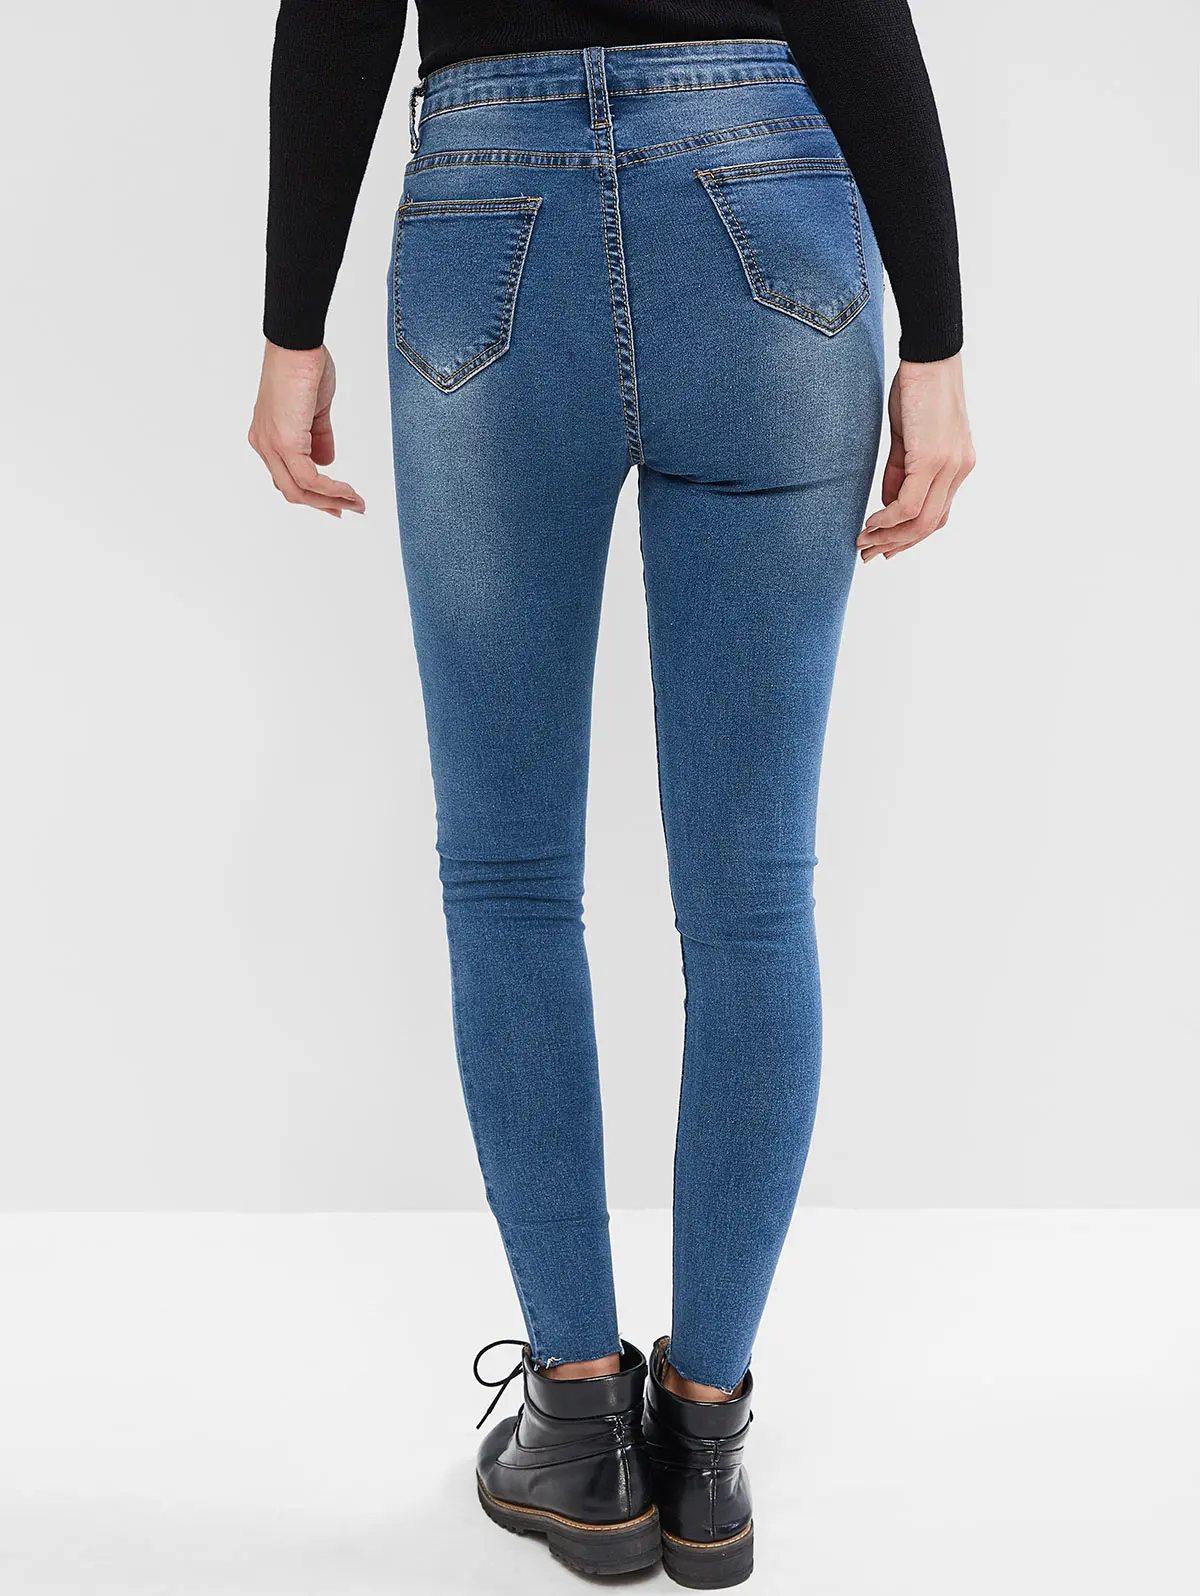 Zabul/джинсы скинни с завышенной талией и отбеливающим эффектом, с необработанным подолом, на молнии, с карманами, с украшением